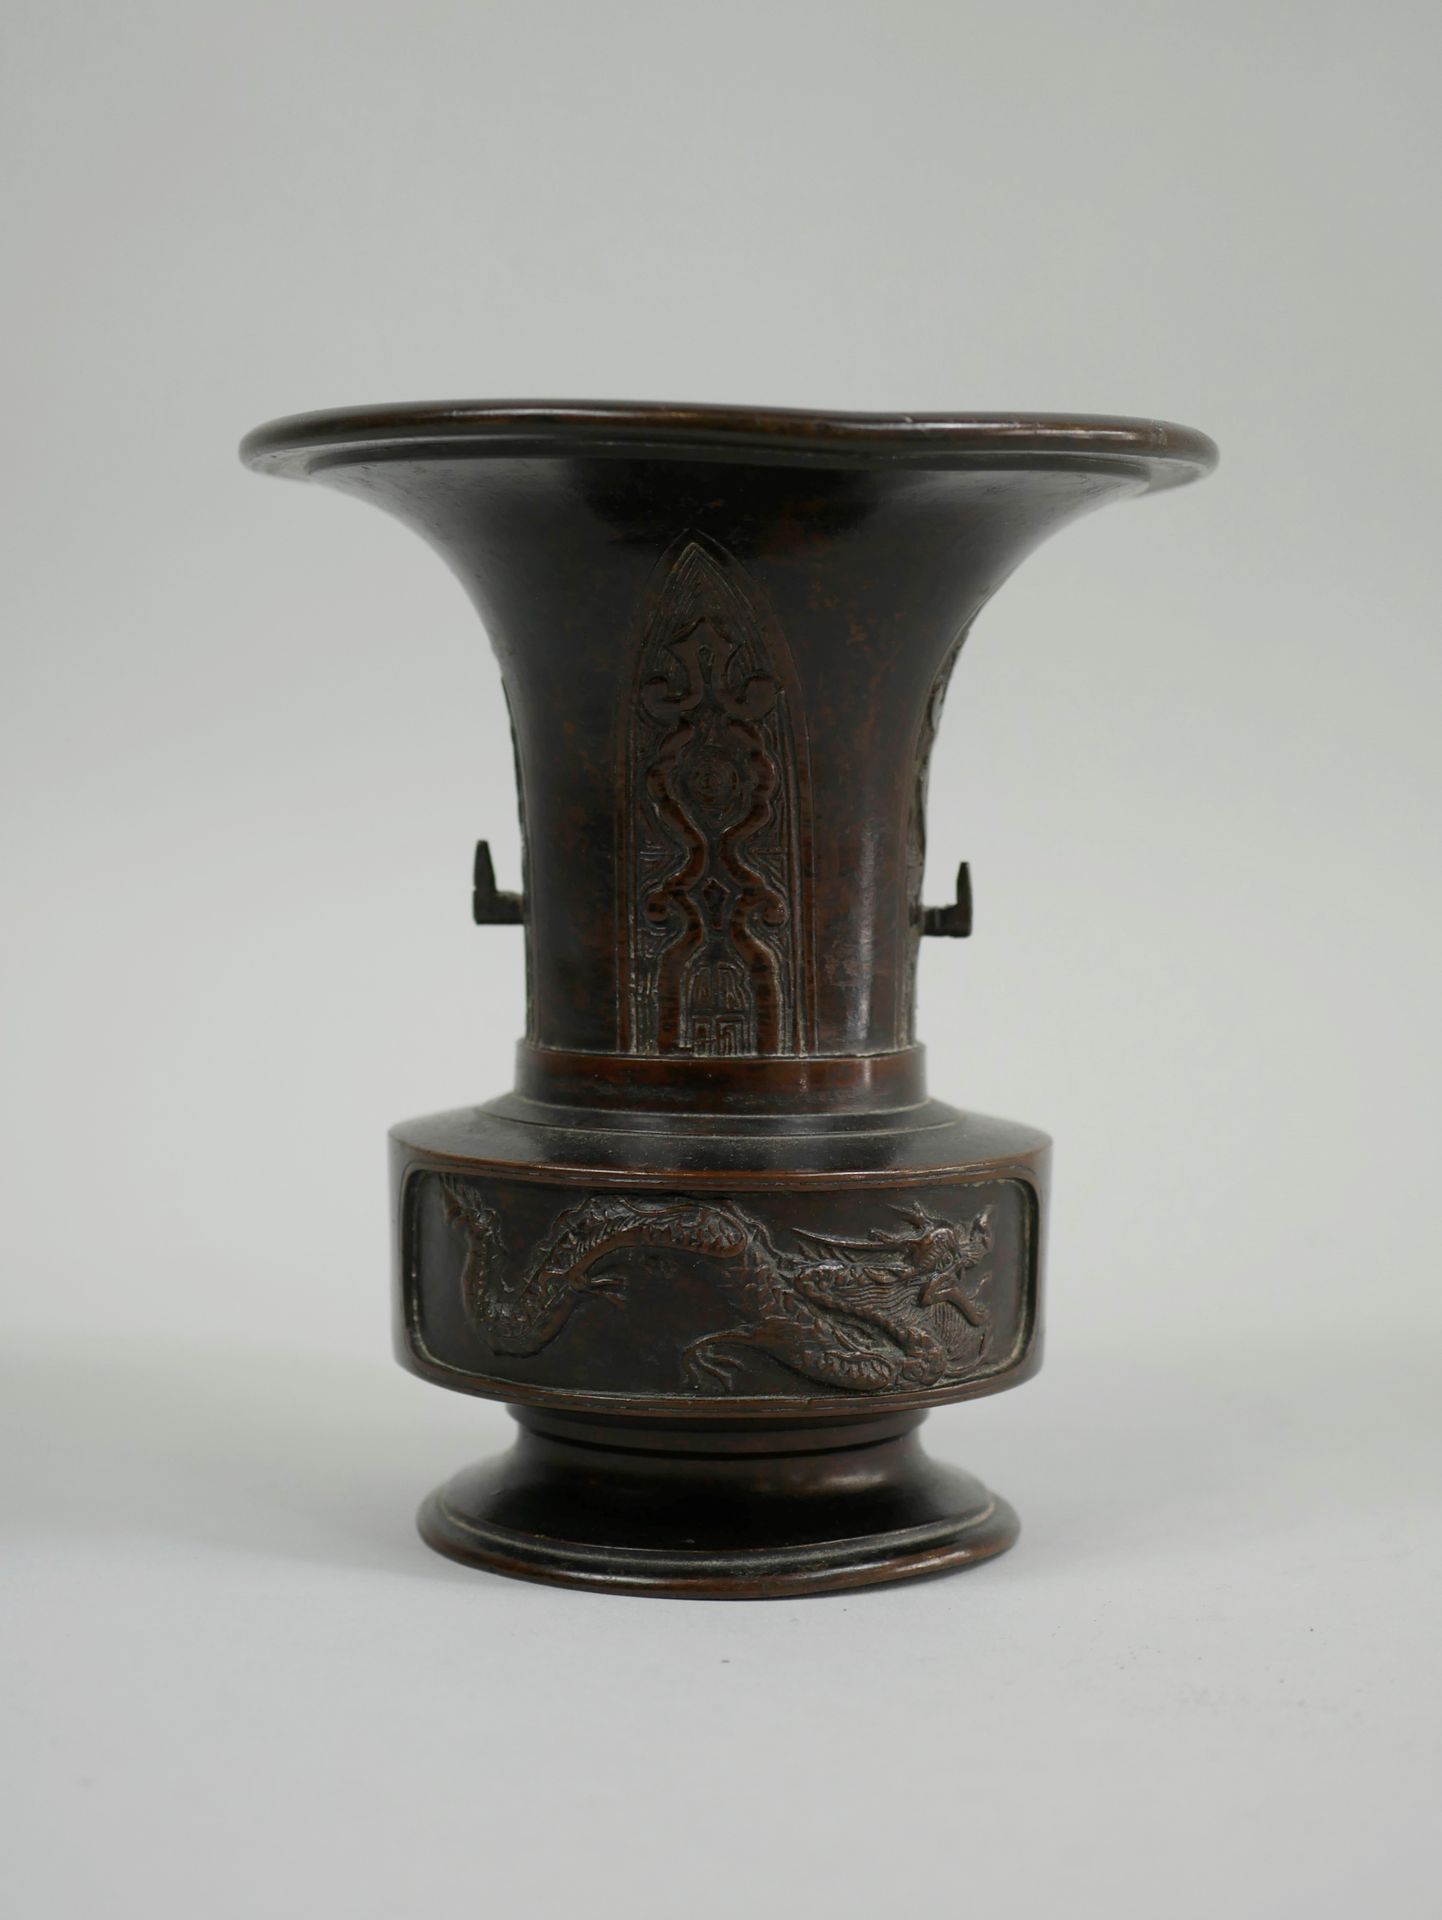 Null 日本。19世纪。棕色铜制的小Usubata花瓶，上面有龙和凤的装饰。高耸的颈部装饰着风格化的蝉鸣声。高14厘米。(脚部和开口处有轻微变形)